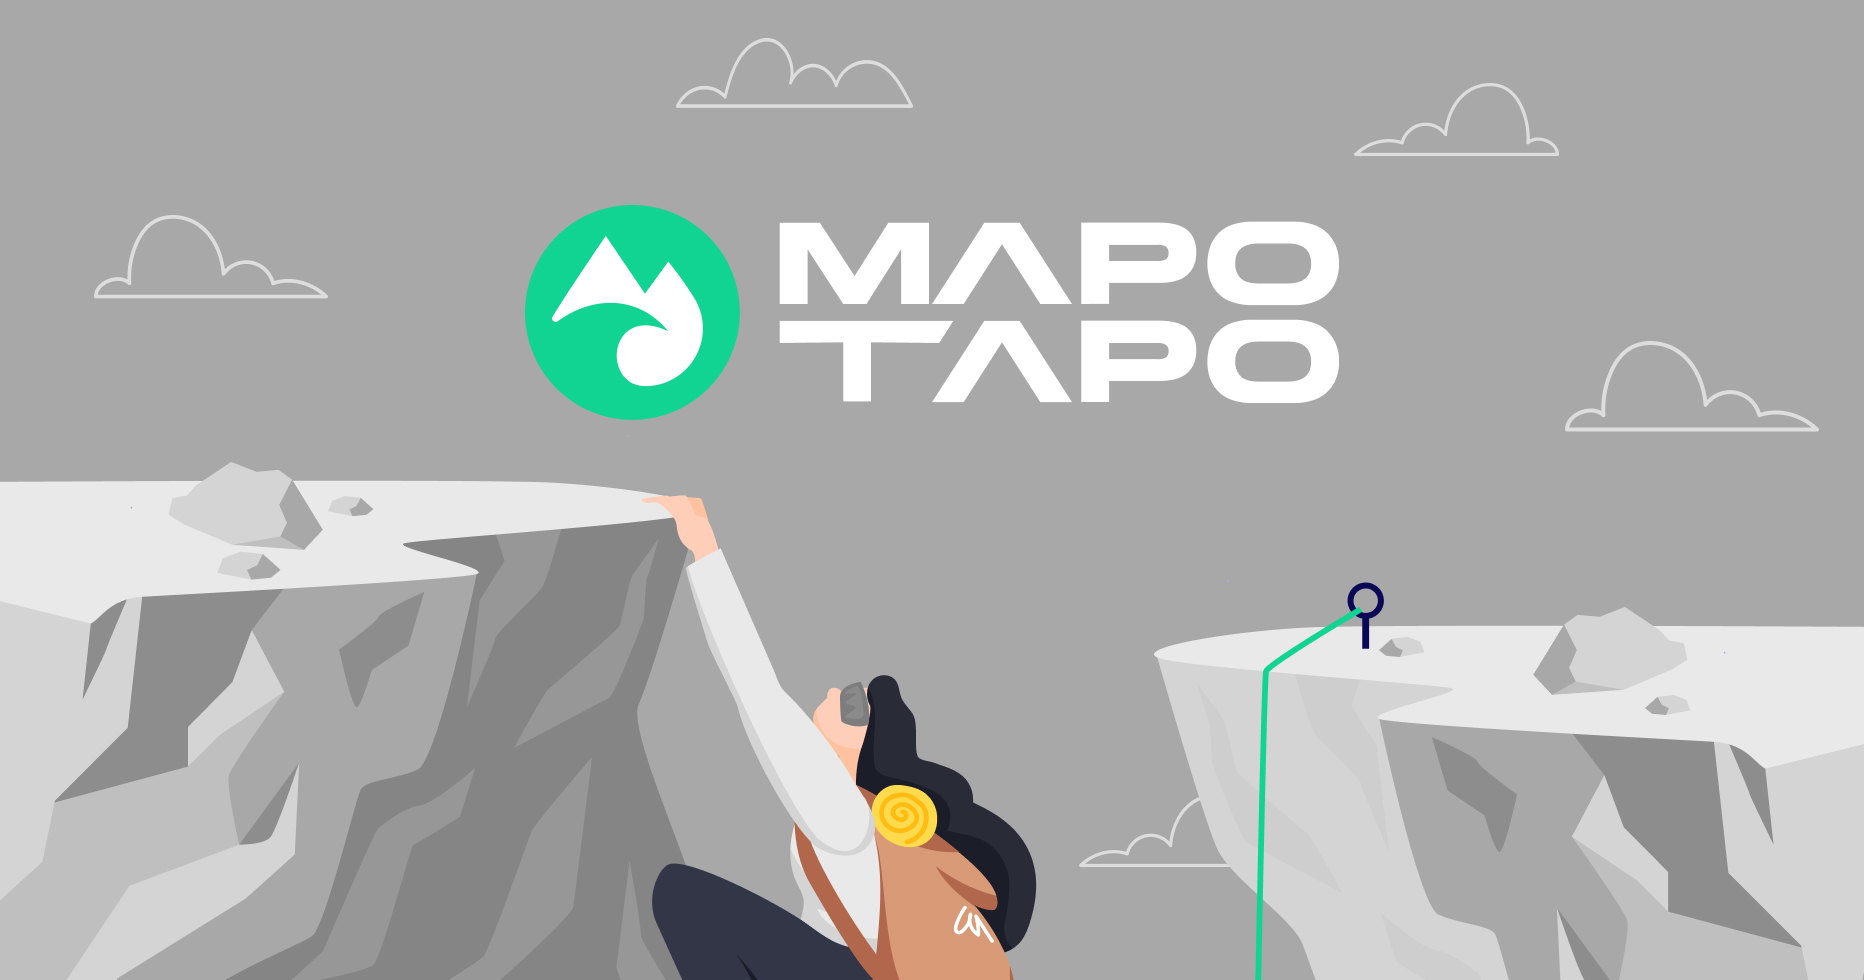 Promote responsible sports tourism with Mapo Tapo